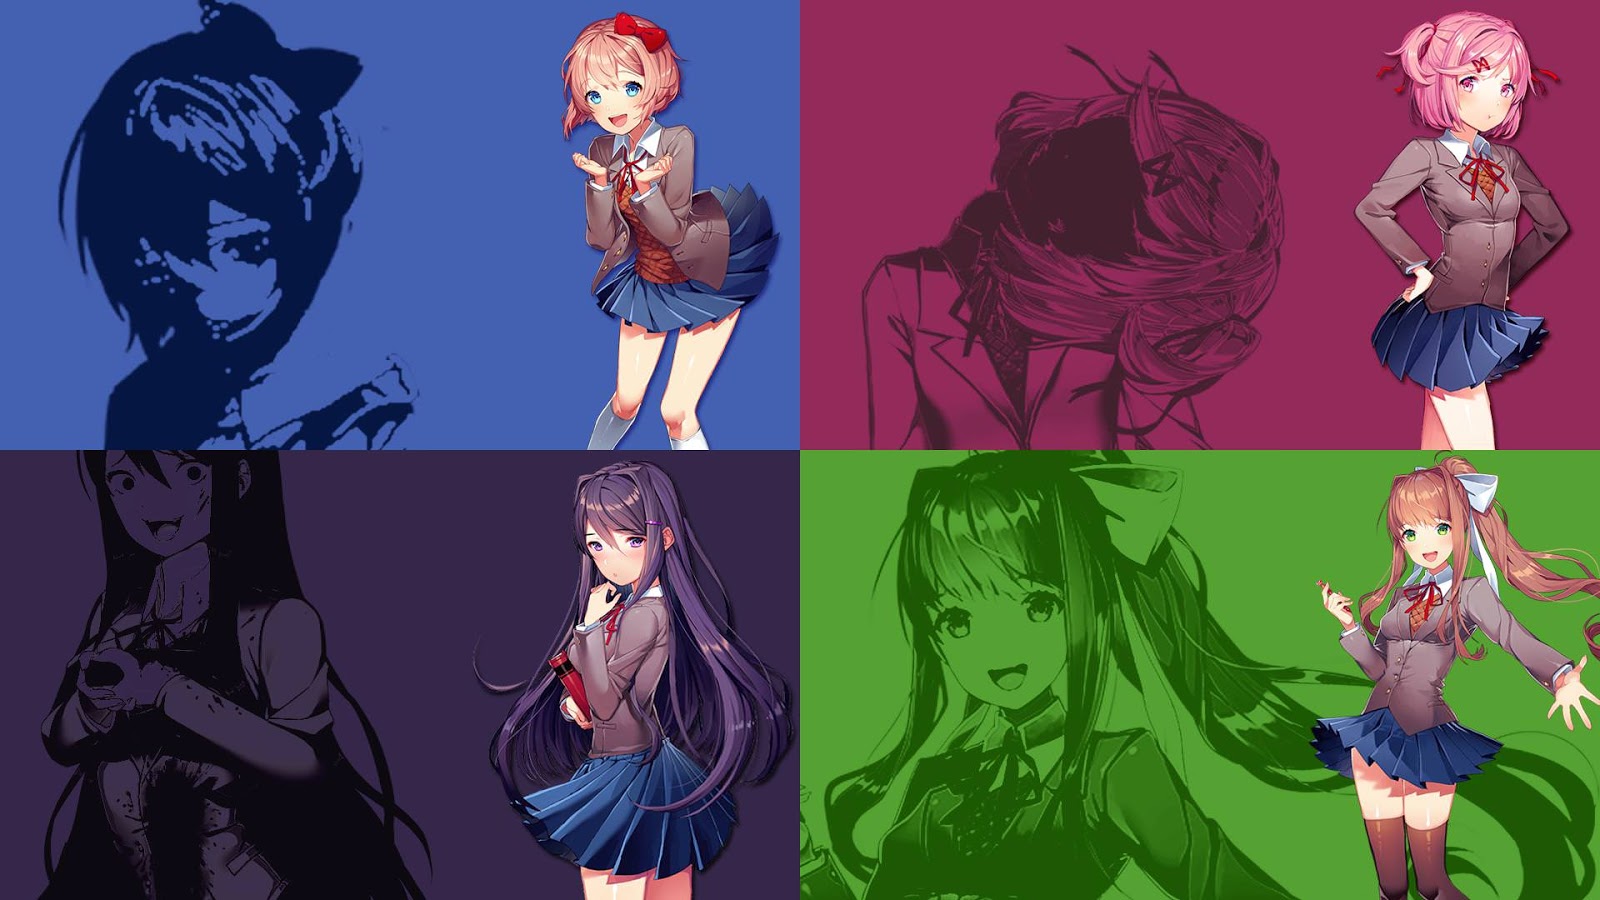 Monika... just Monika.... just Monika... just Monika. 